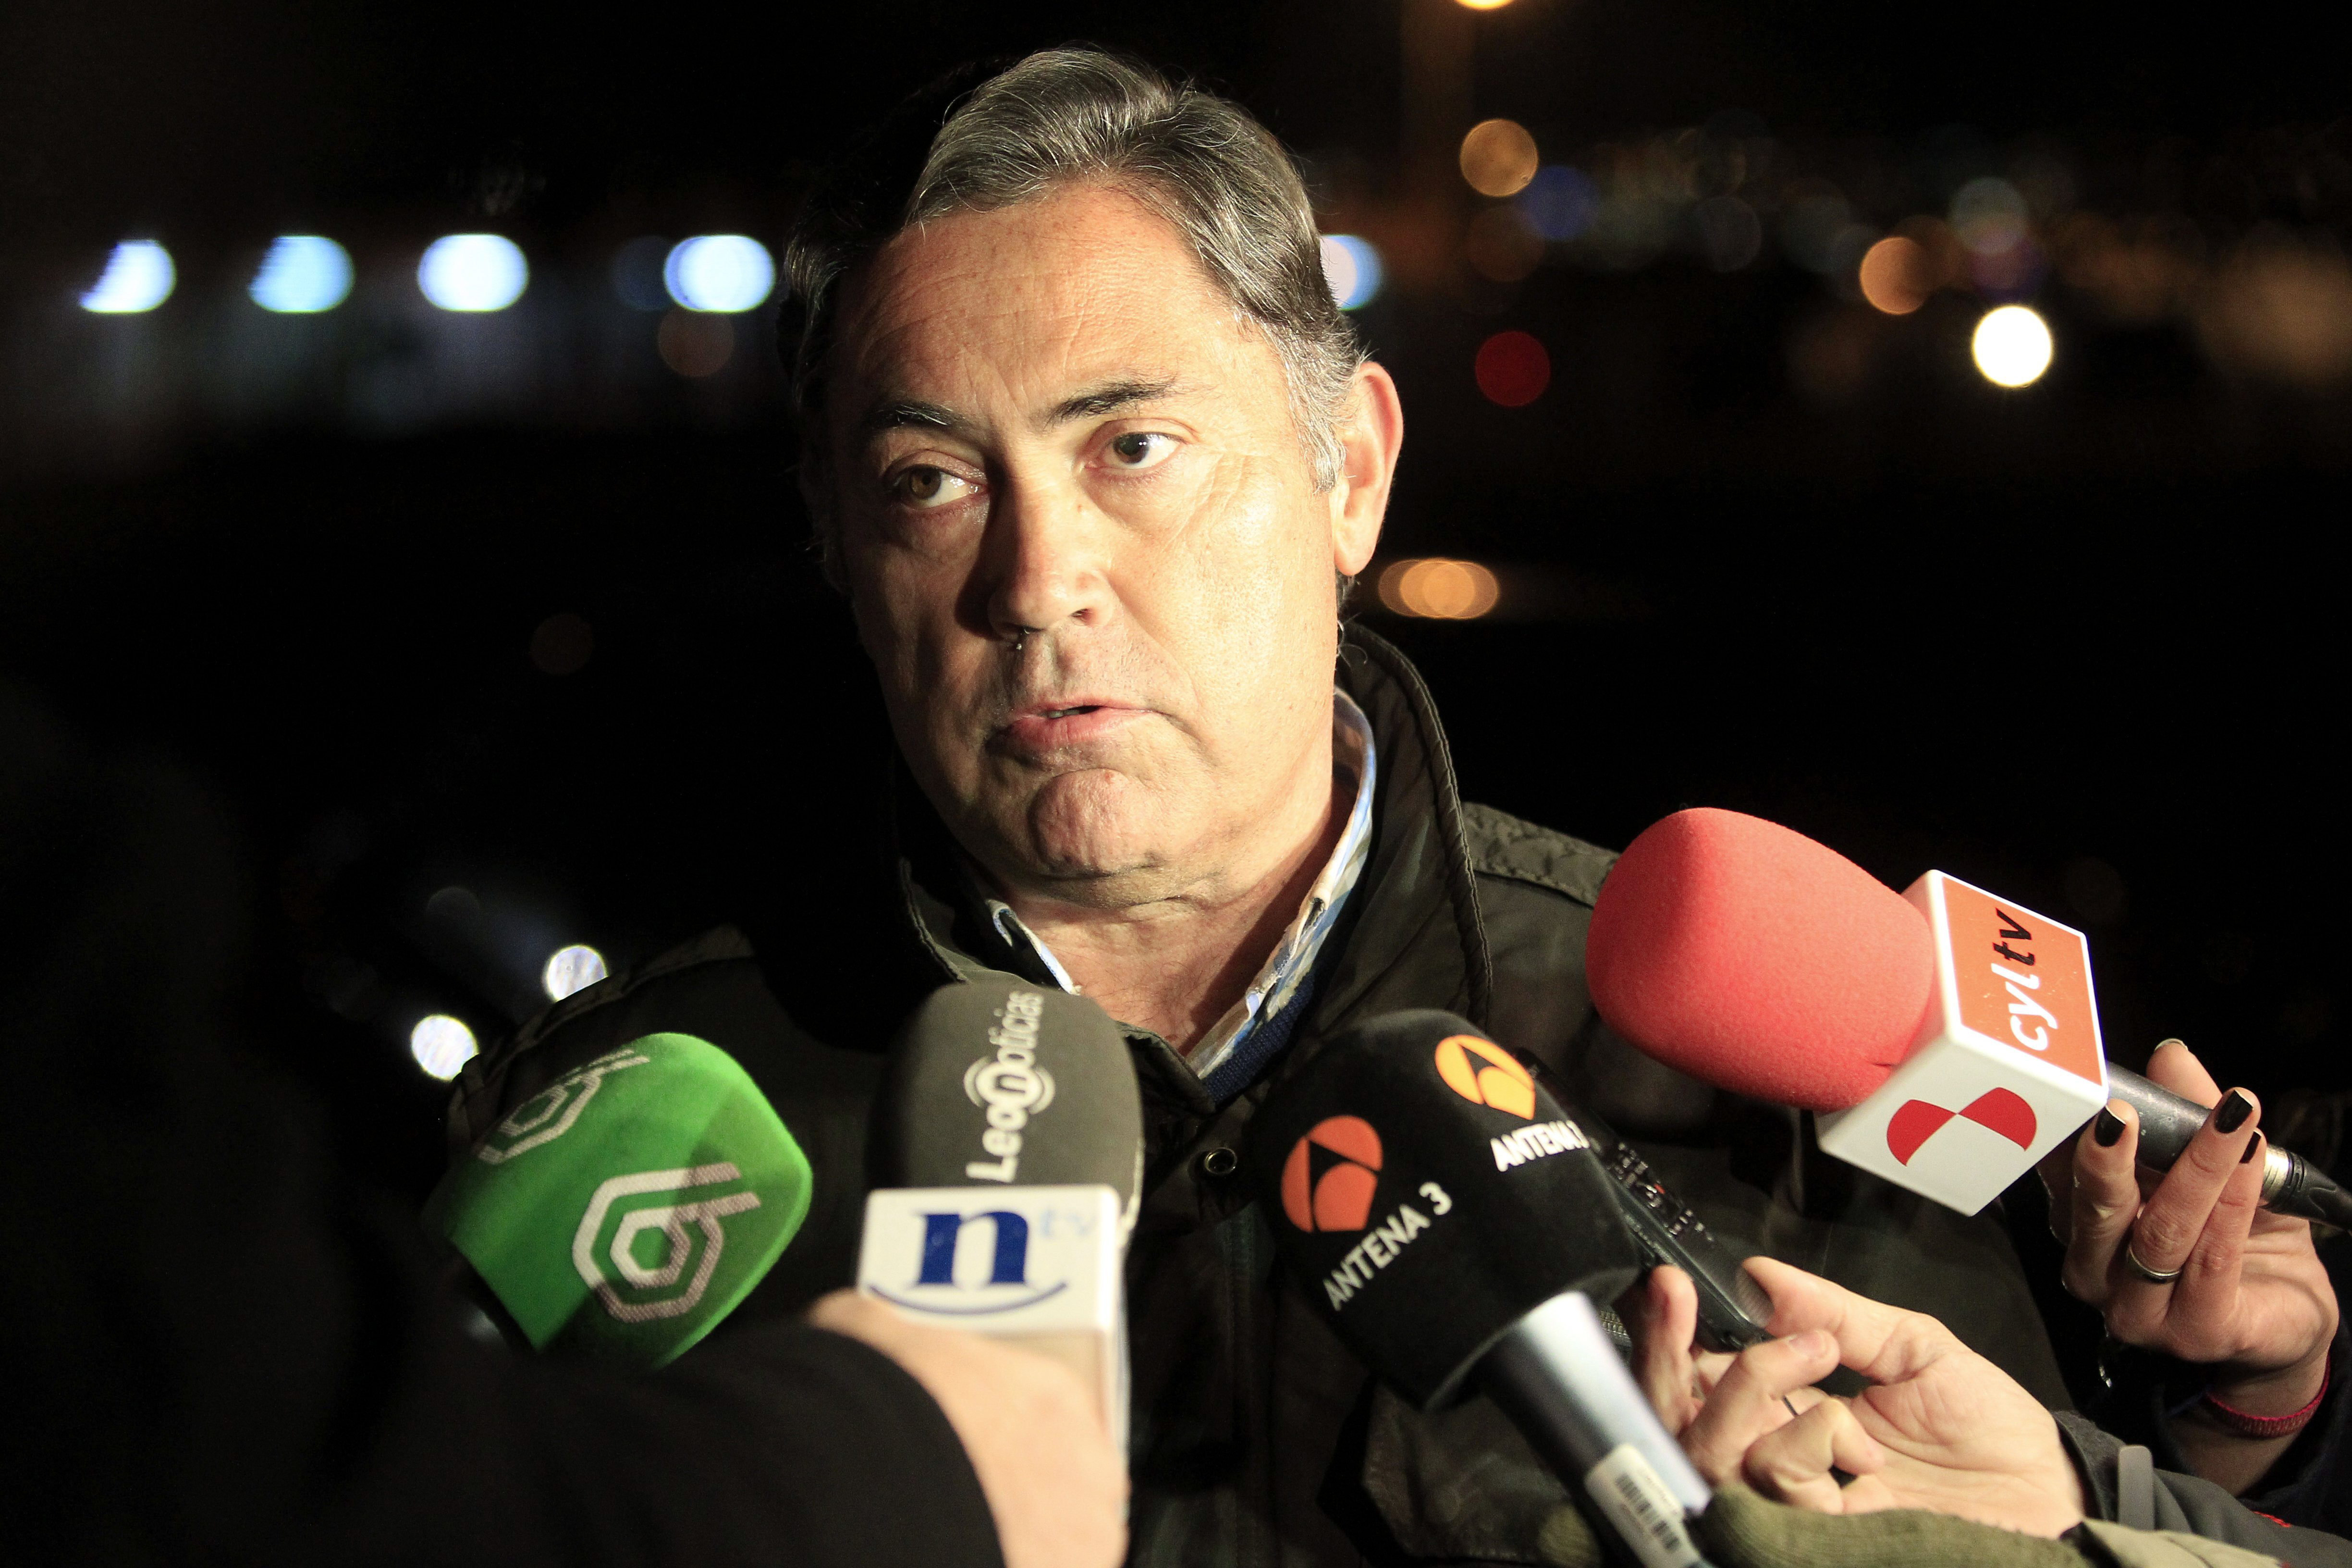 El expresidente de la Diputación de León Marcos Martínez Barazón, imputado en la operación Púnica, realiza declaraciones a los periodistas a su salida de la cárcel.